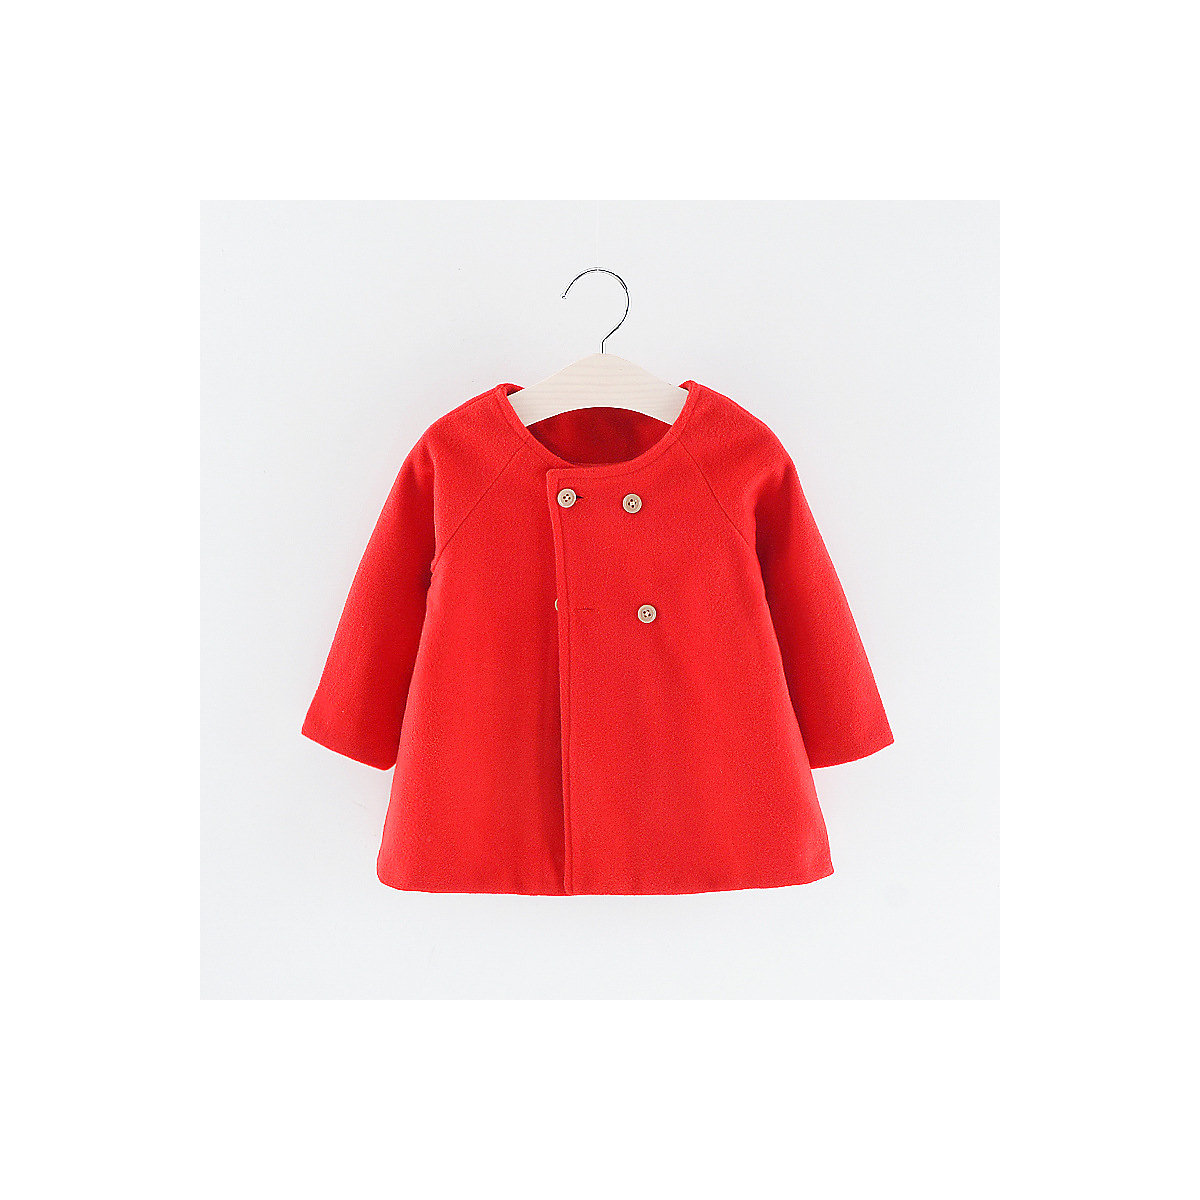 Vicabo Mantel Jacke für Baby Mädchen Mäntel für Mädchen rot